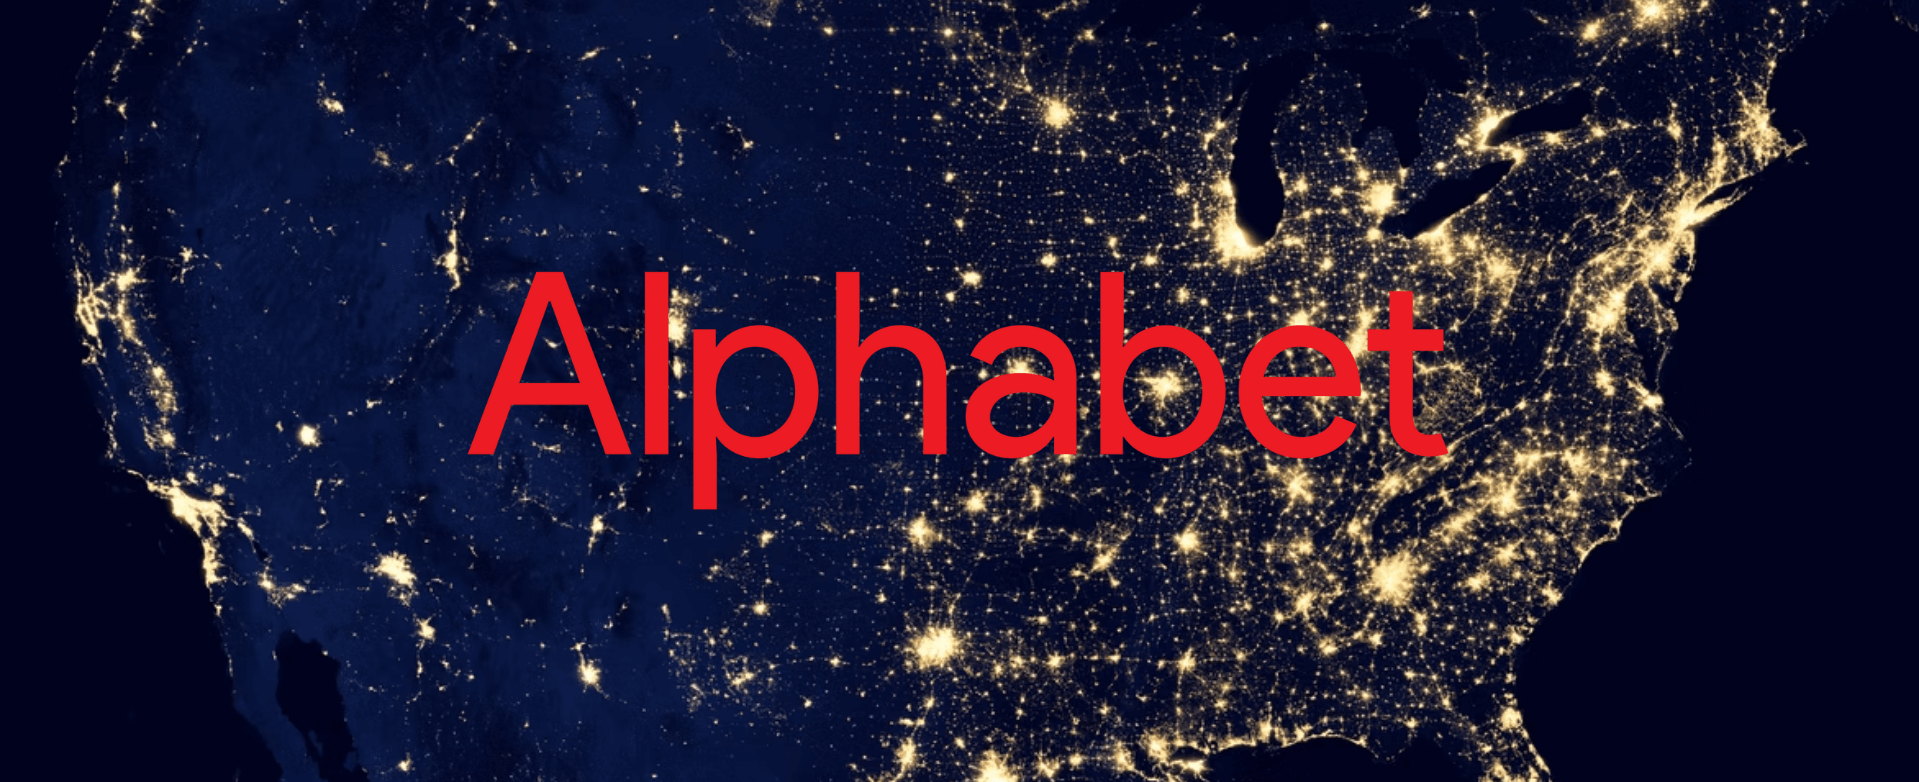 Alphabet Aktie Analyse - Der tiefste Burggraben der Welt?